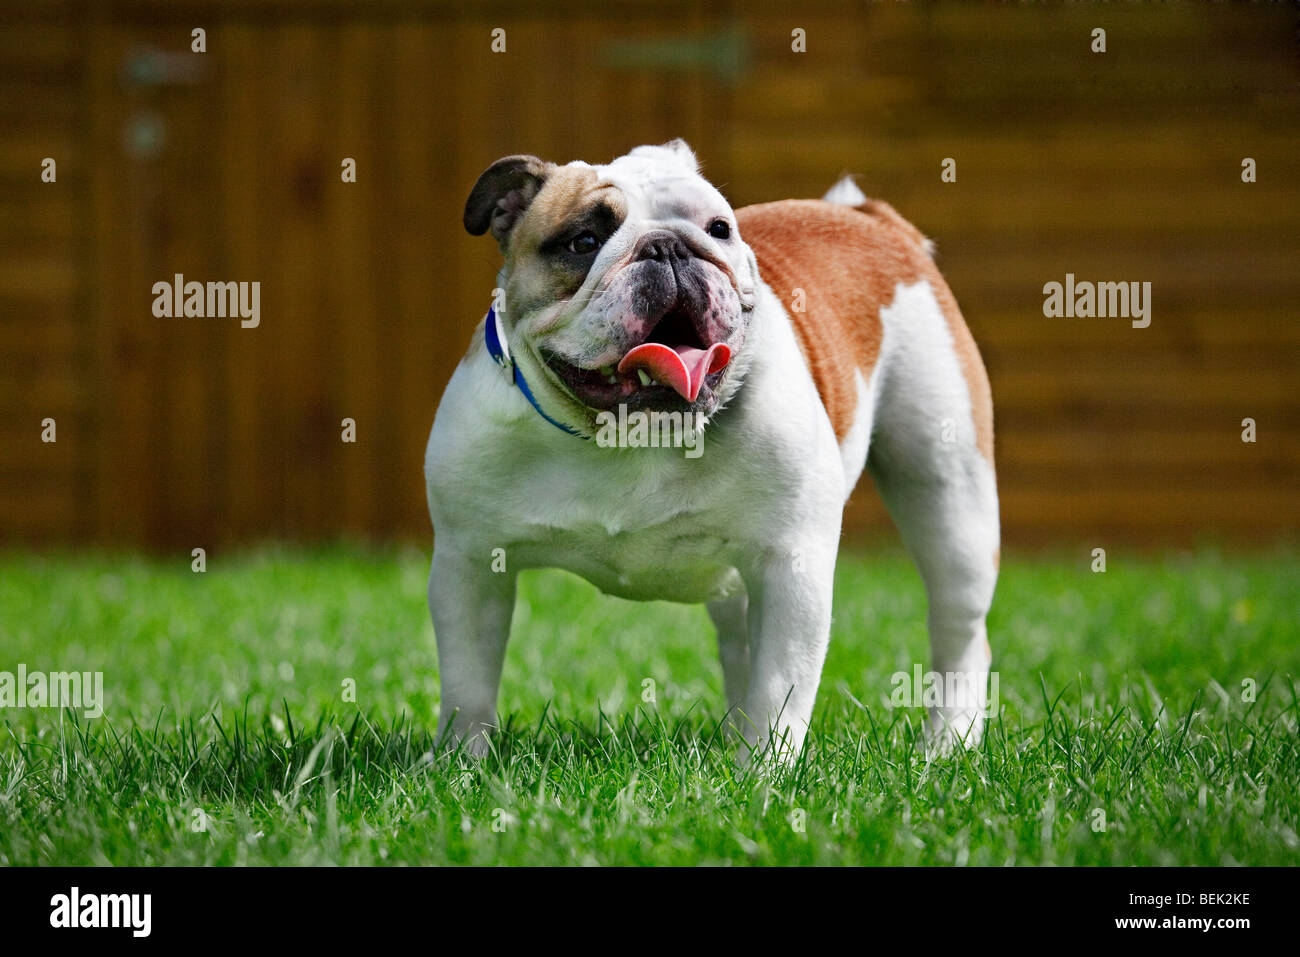 Bulldog, British dog breed on lawn in garden Stock Photo